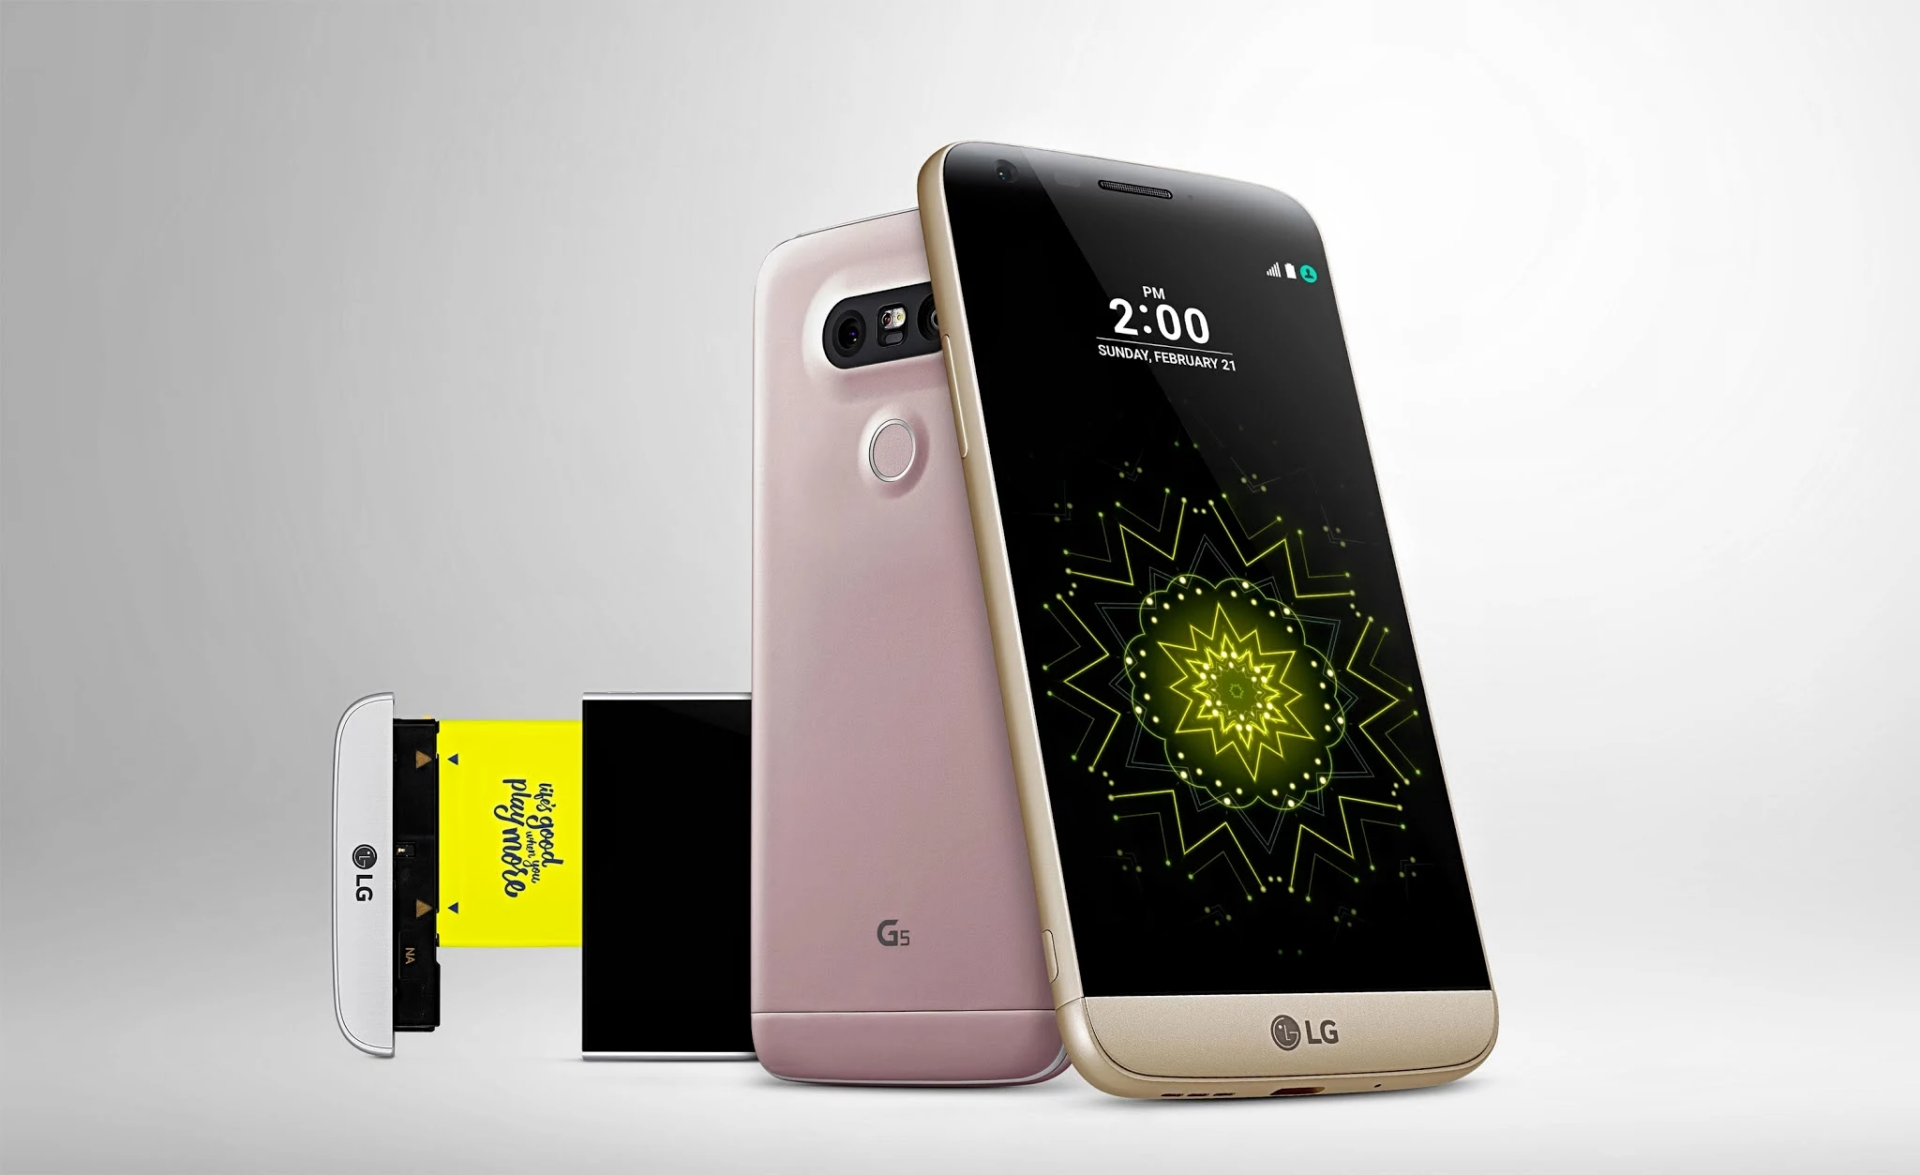 เปิดตัว LG G5 ดีไซน์แปลกใหม่ ถอดแบตเตอรี่ที่ด้านล่างของเครื่องได้